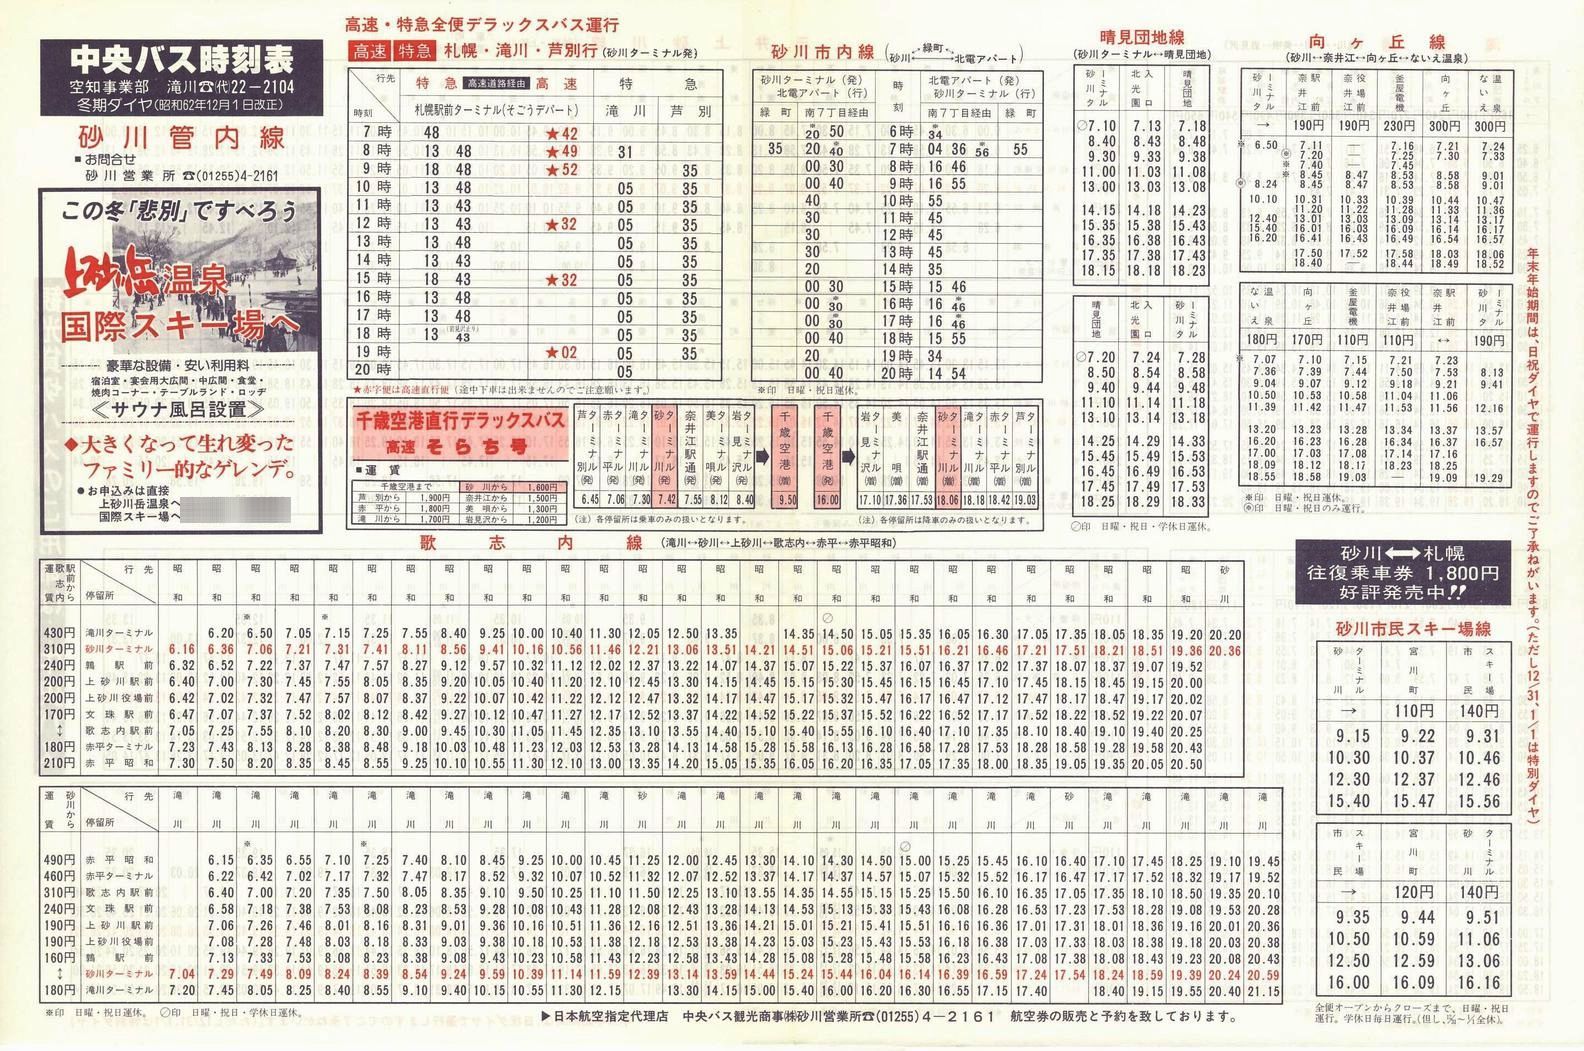 1987-12-01改正_北海道中央バス(空知)_砂川管内線時刻表表面